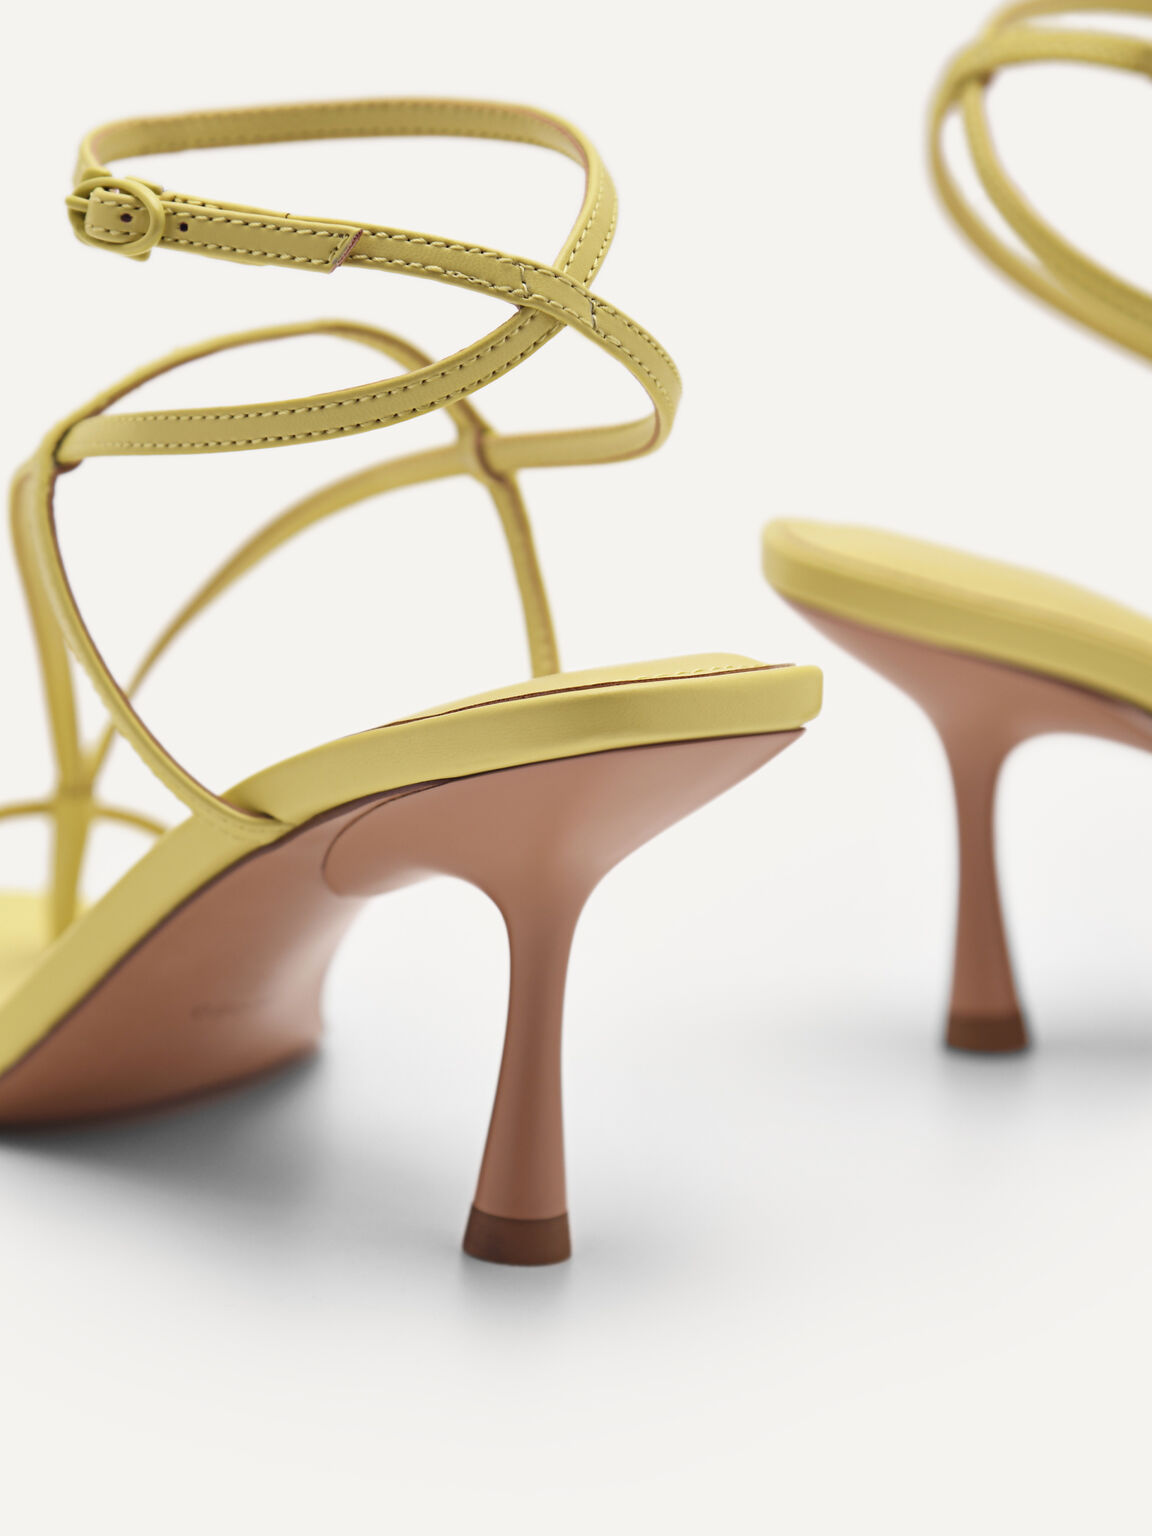 Giày sandals cao gót mũi vuông quai mảnh tính, Vàng, hi-res